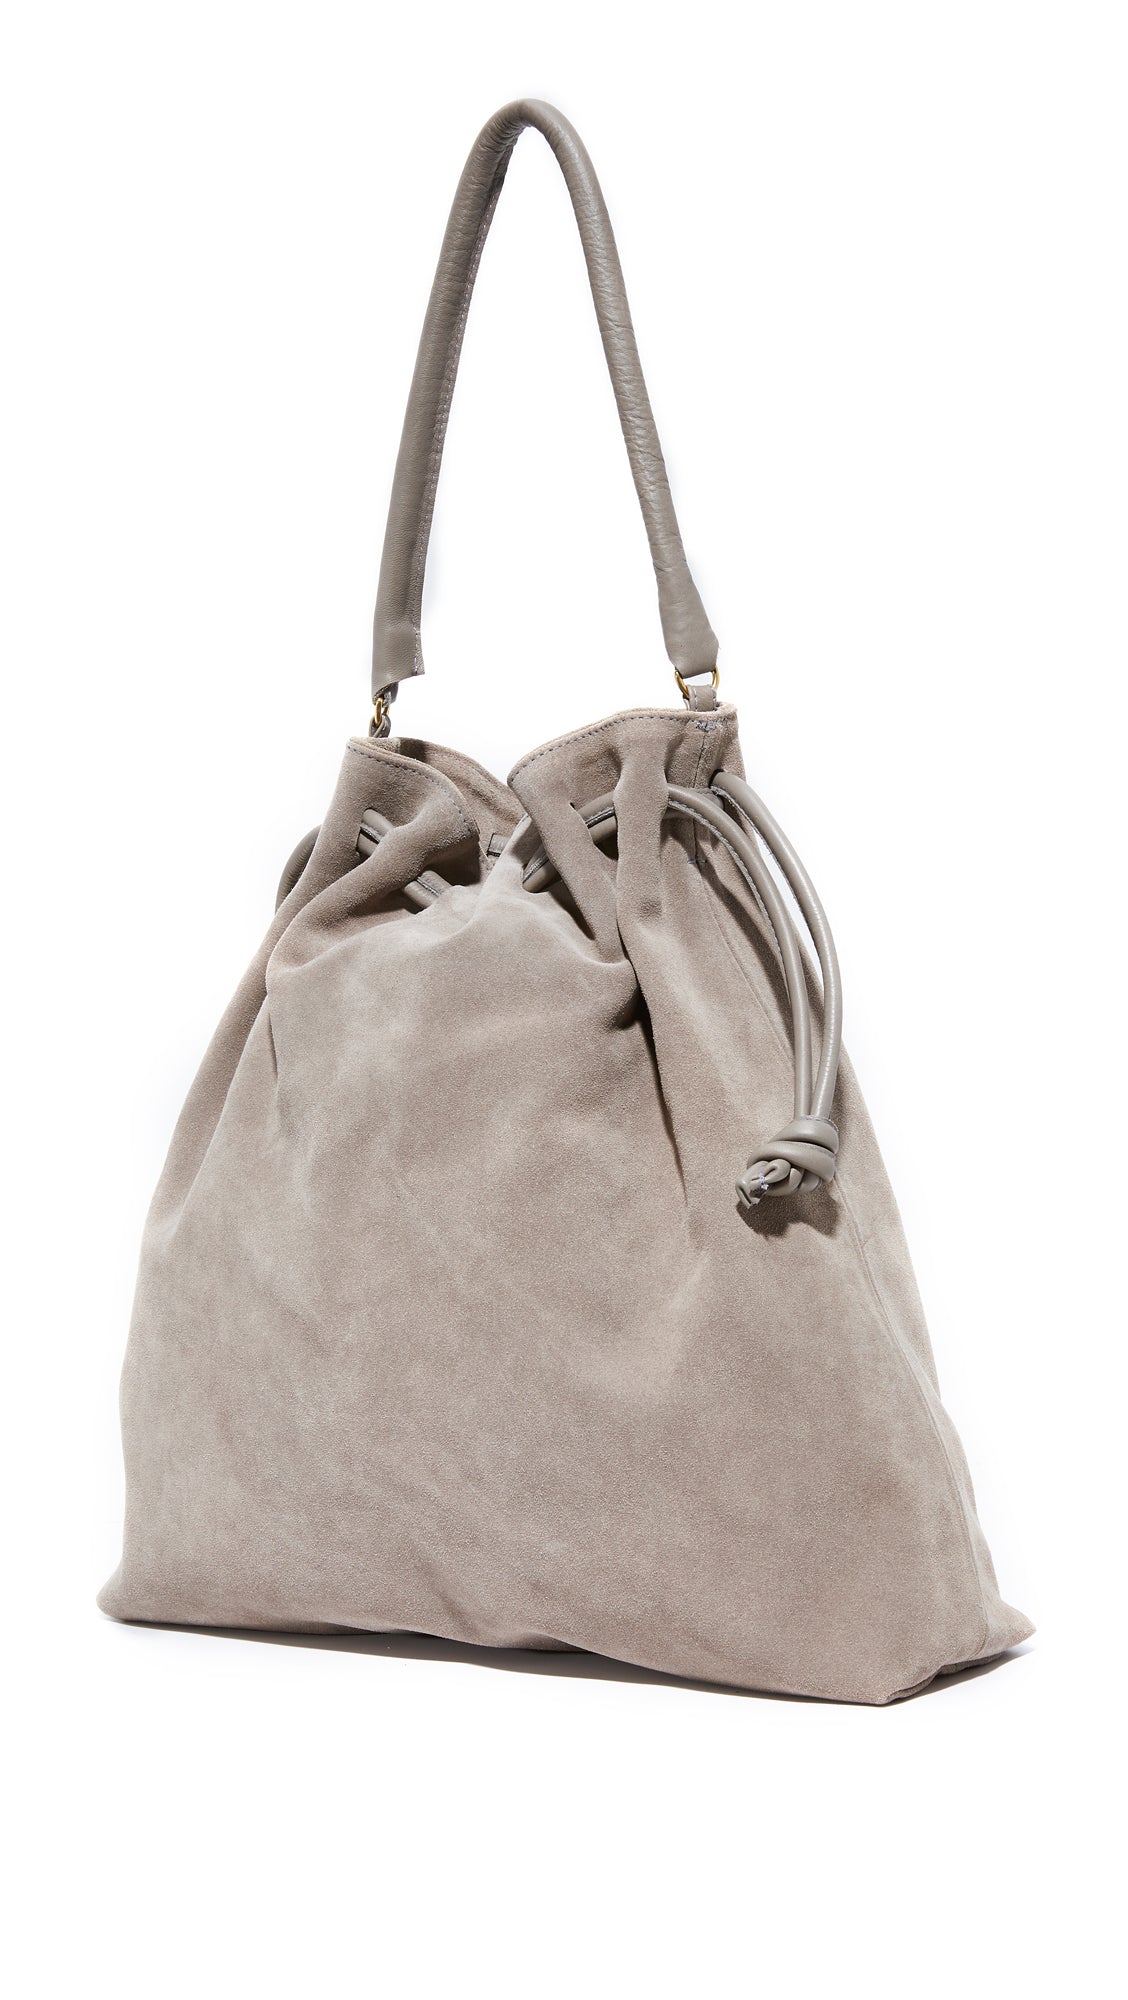 Designer Suede Handbags & Bags, myGemma